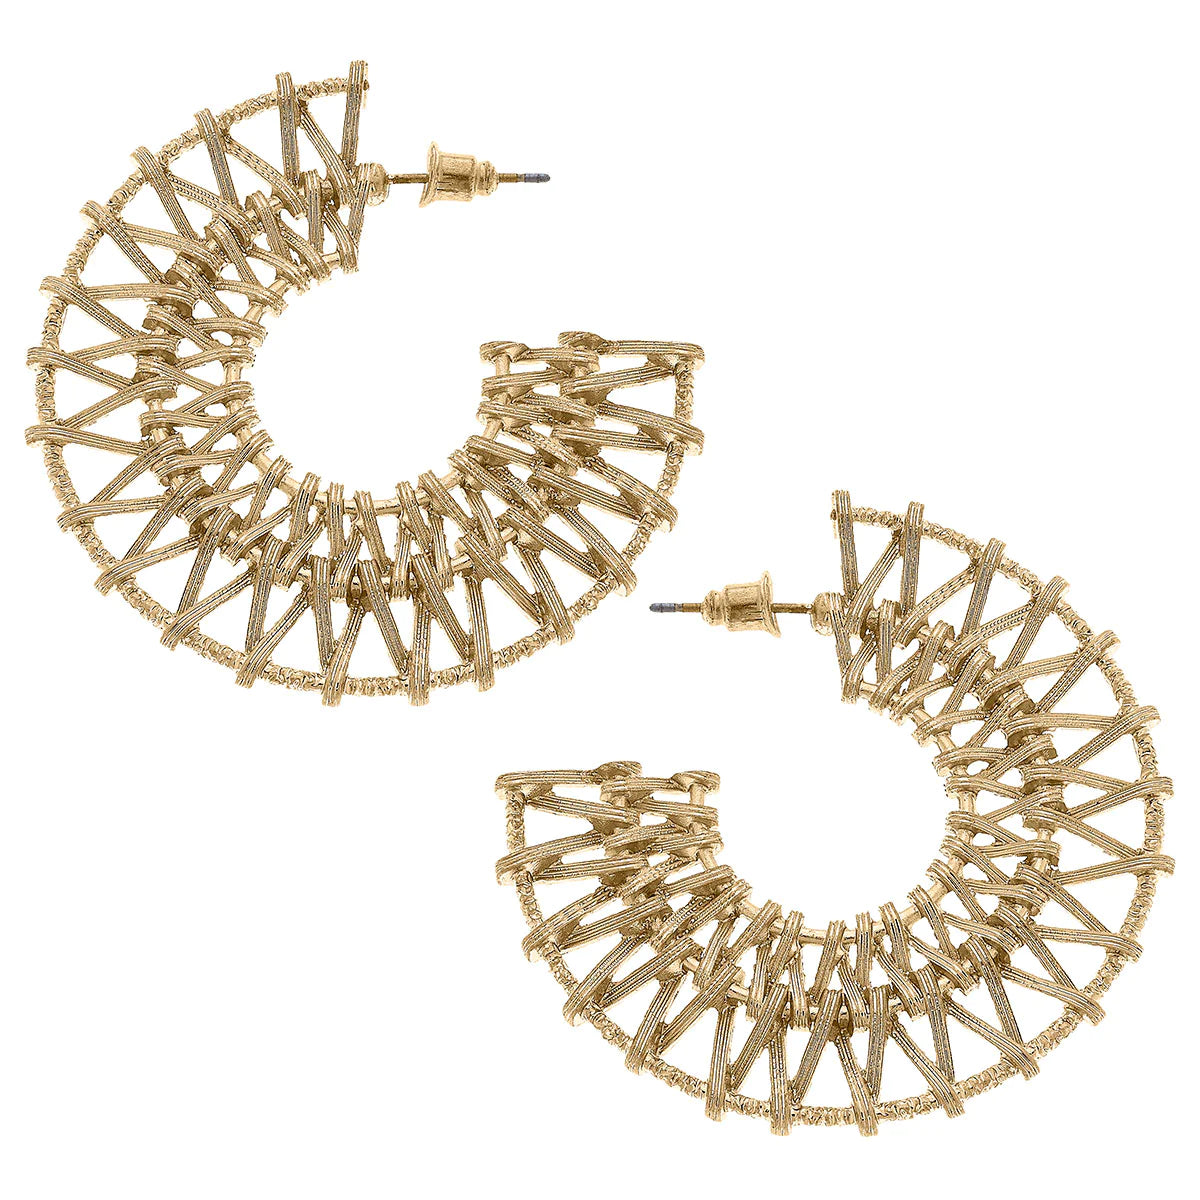 Alexandra Metal-Plated Rattan Flat Hoop Earrings in Worn Gold